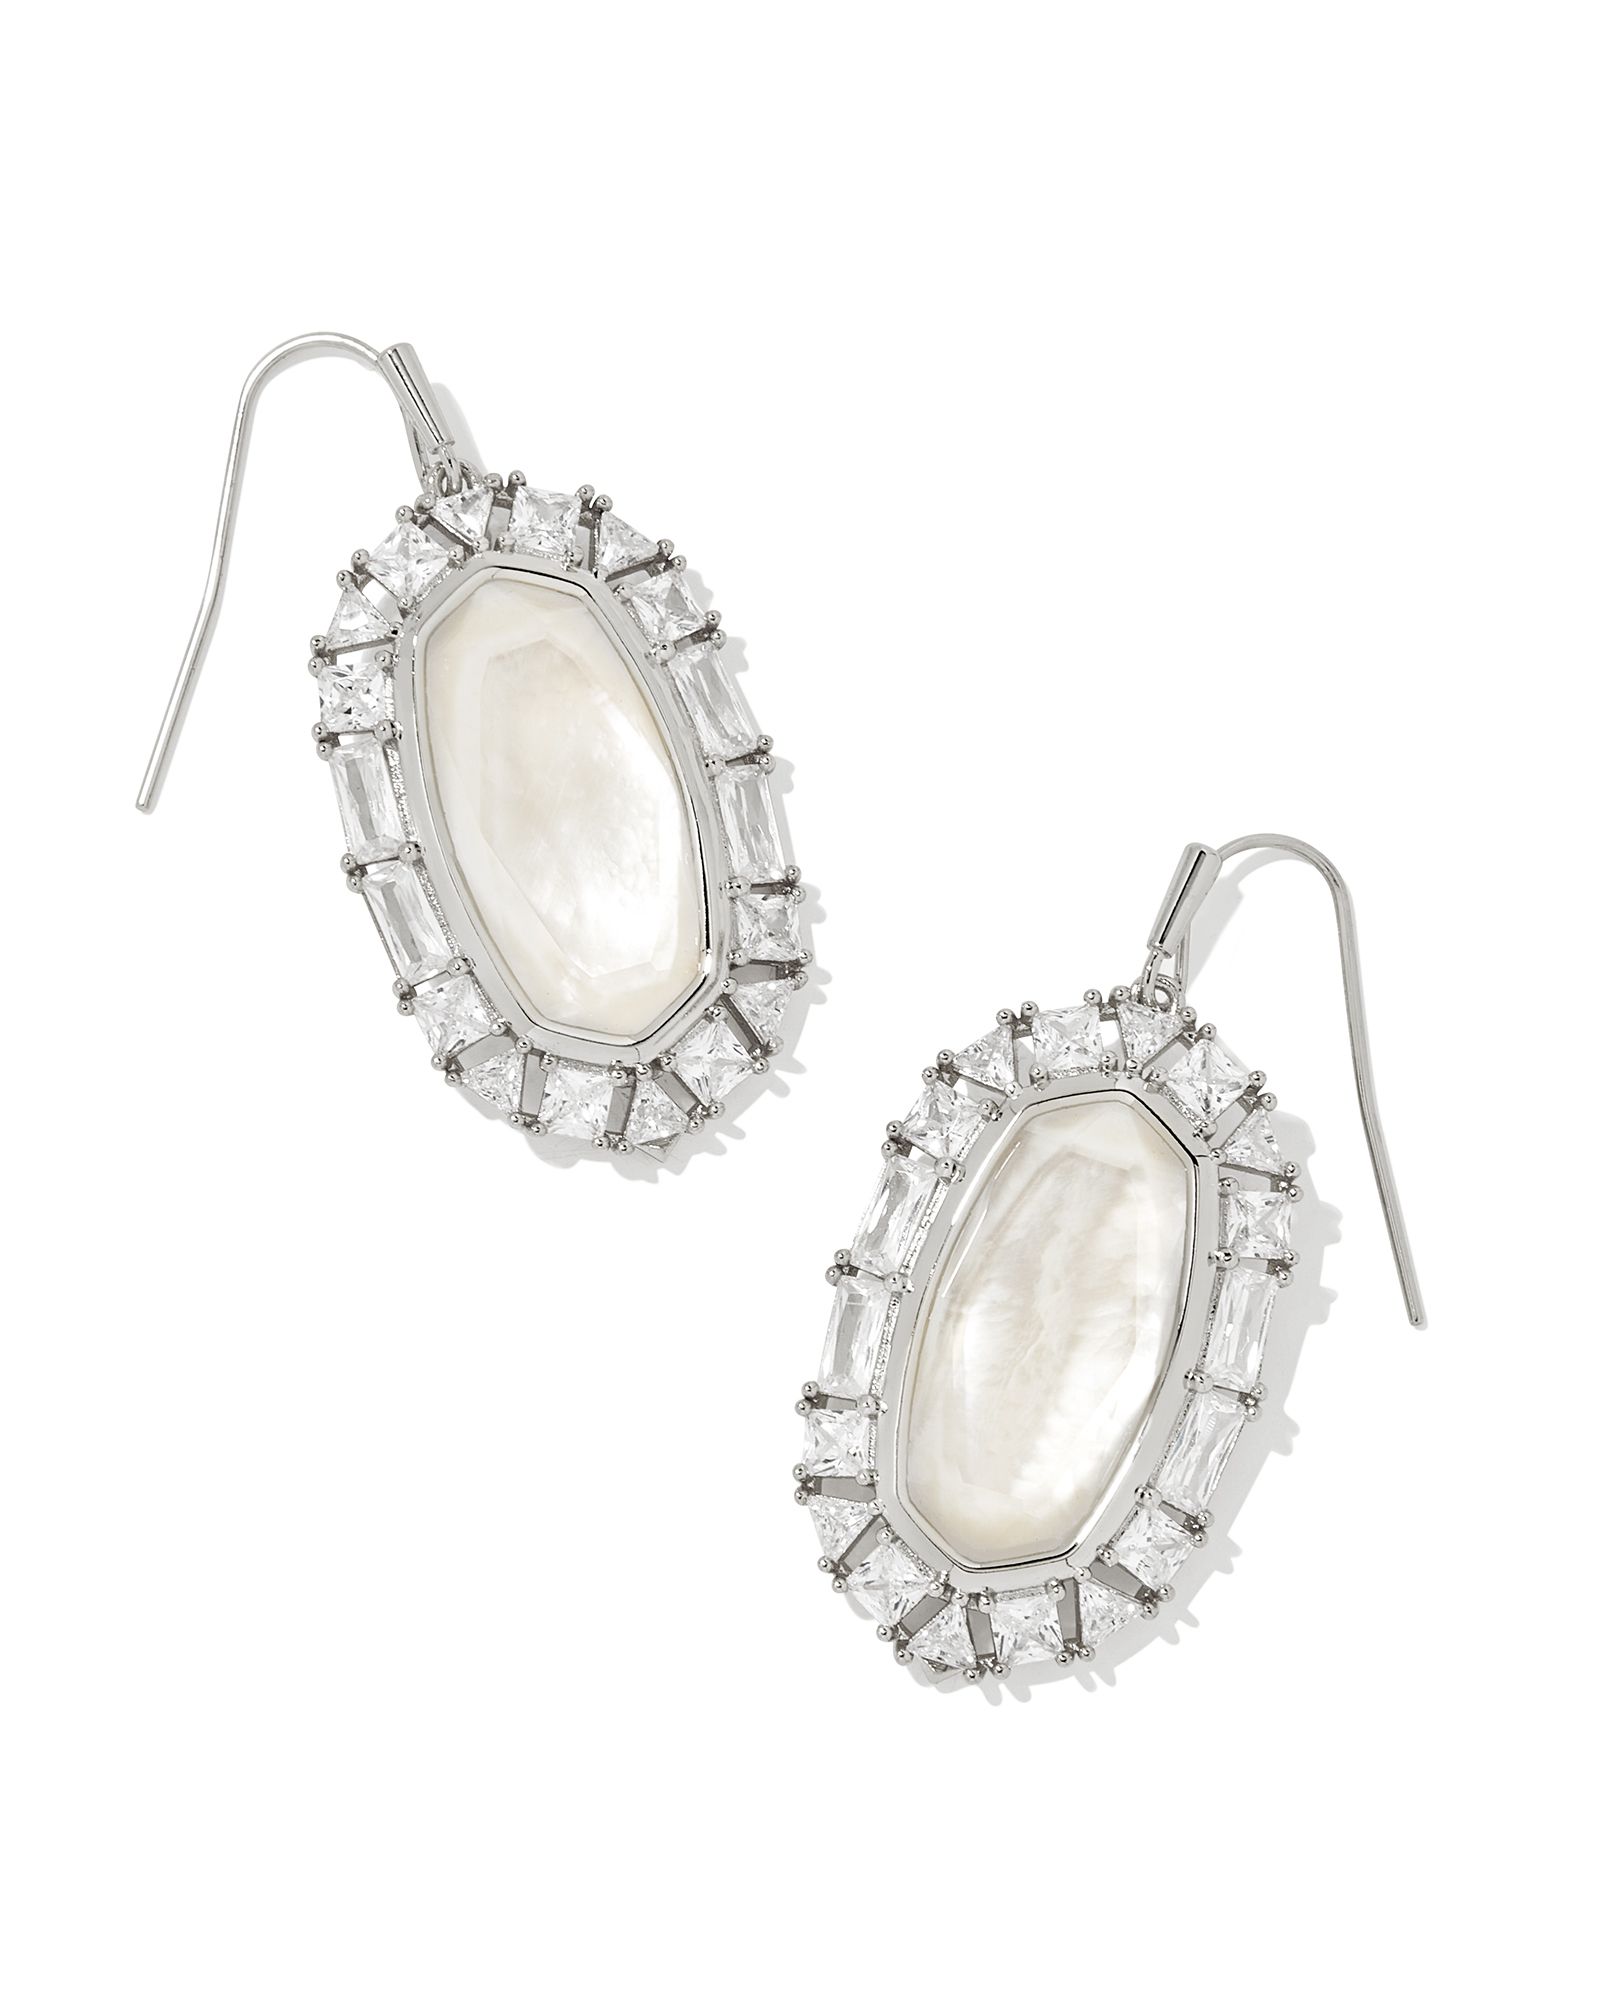 Elle Silver Crystal Frame Drop Earrings in Ivory Mother-of-Pearl | Kendra Scott | Kendra Scott